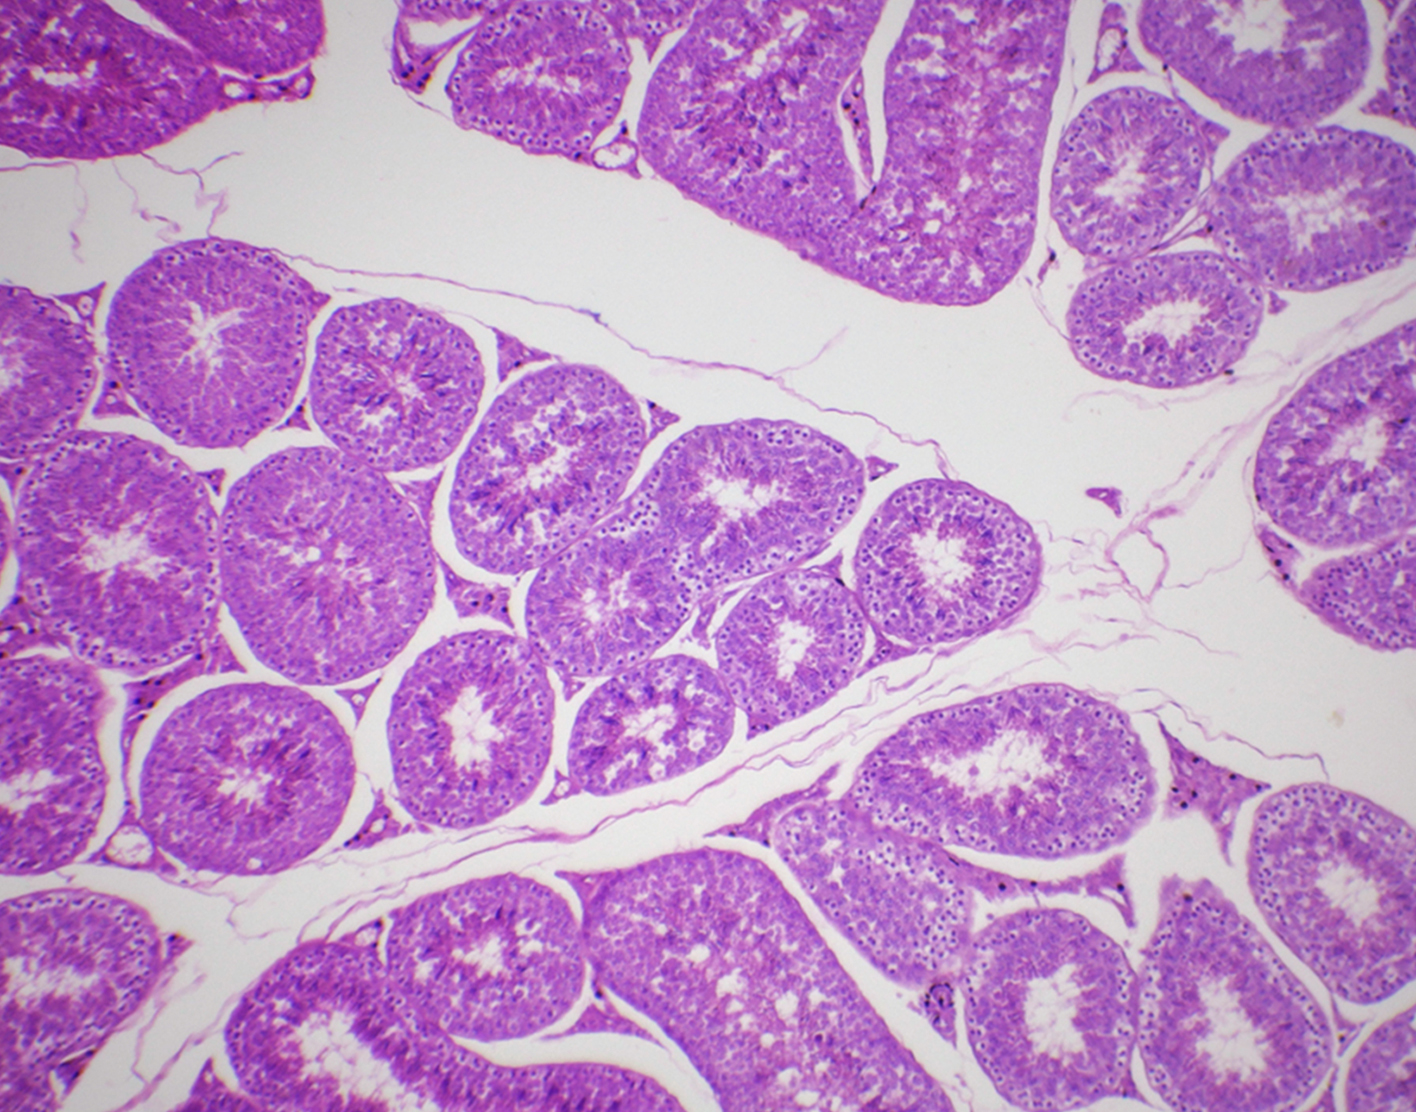 testicular-biopsy-708x556-2x